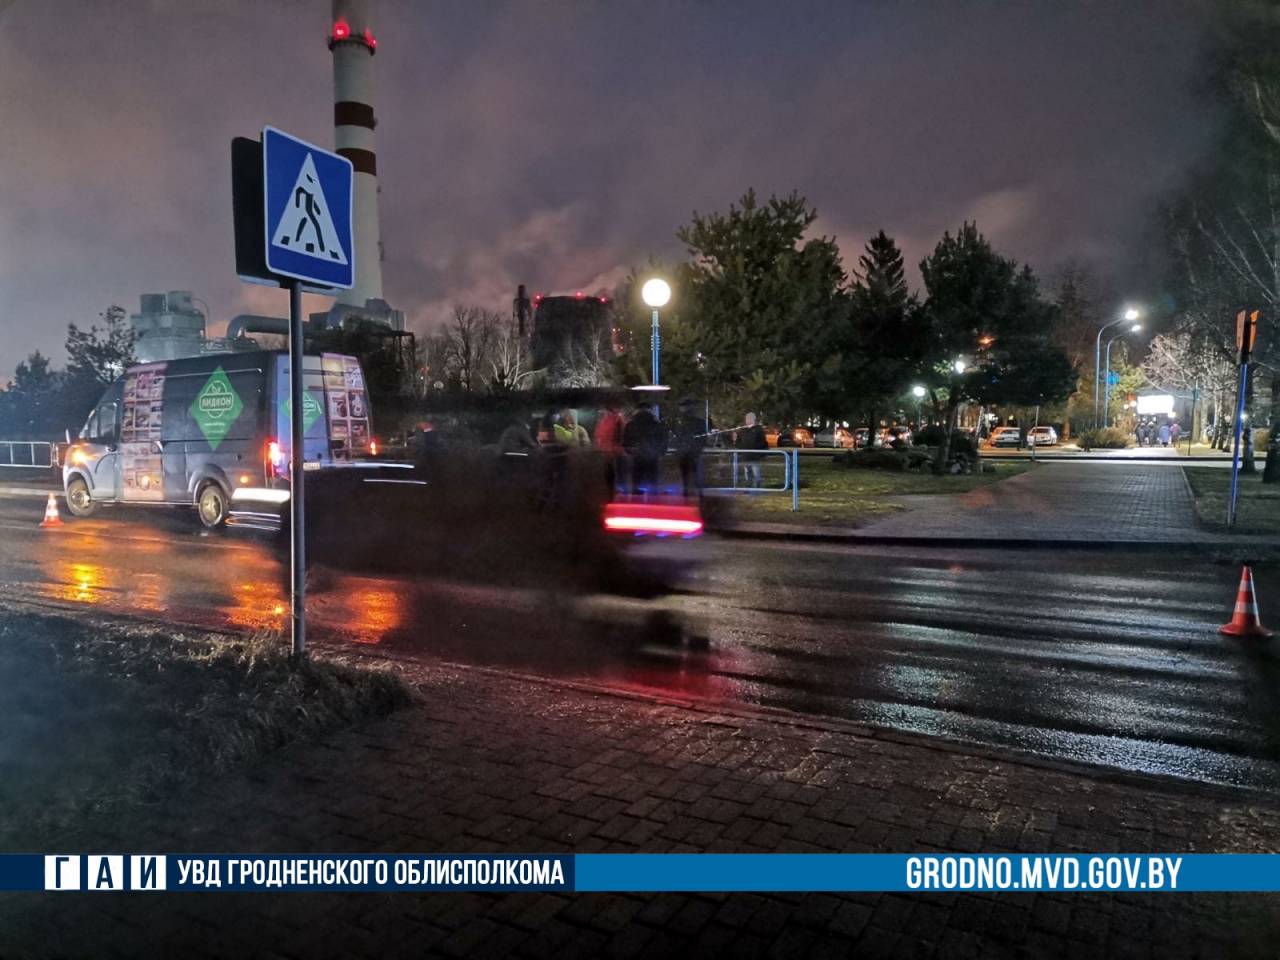 Утром в Гродно на пешеходном переходе сбили мужчину. Вместо работы он попал в больницу